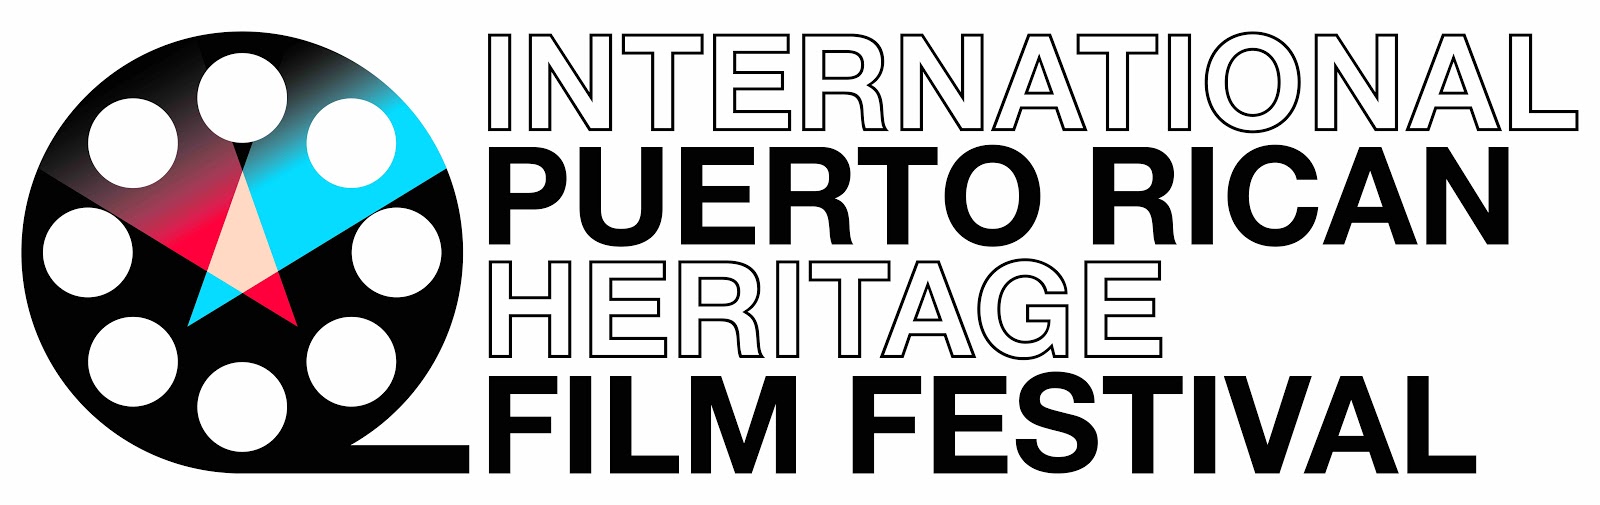 Festival international du film du patrimoine portoricain écrit en lettres noires et en gras à côté d'un graphique de bobine de film.